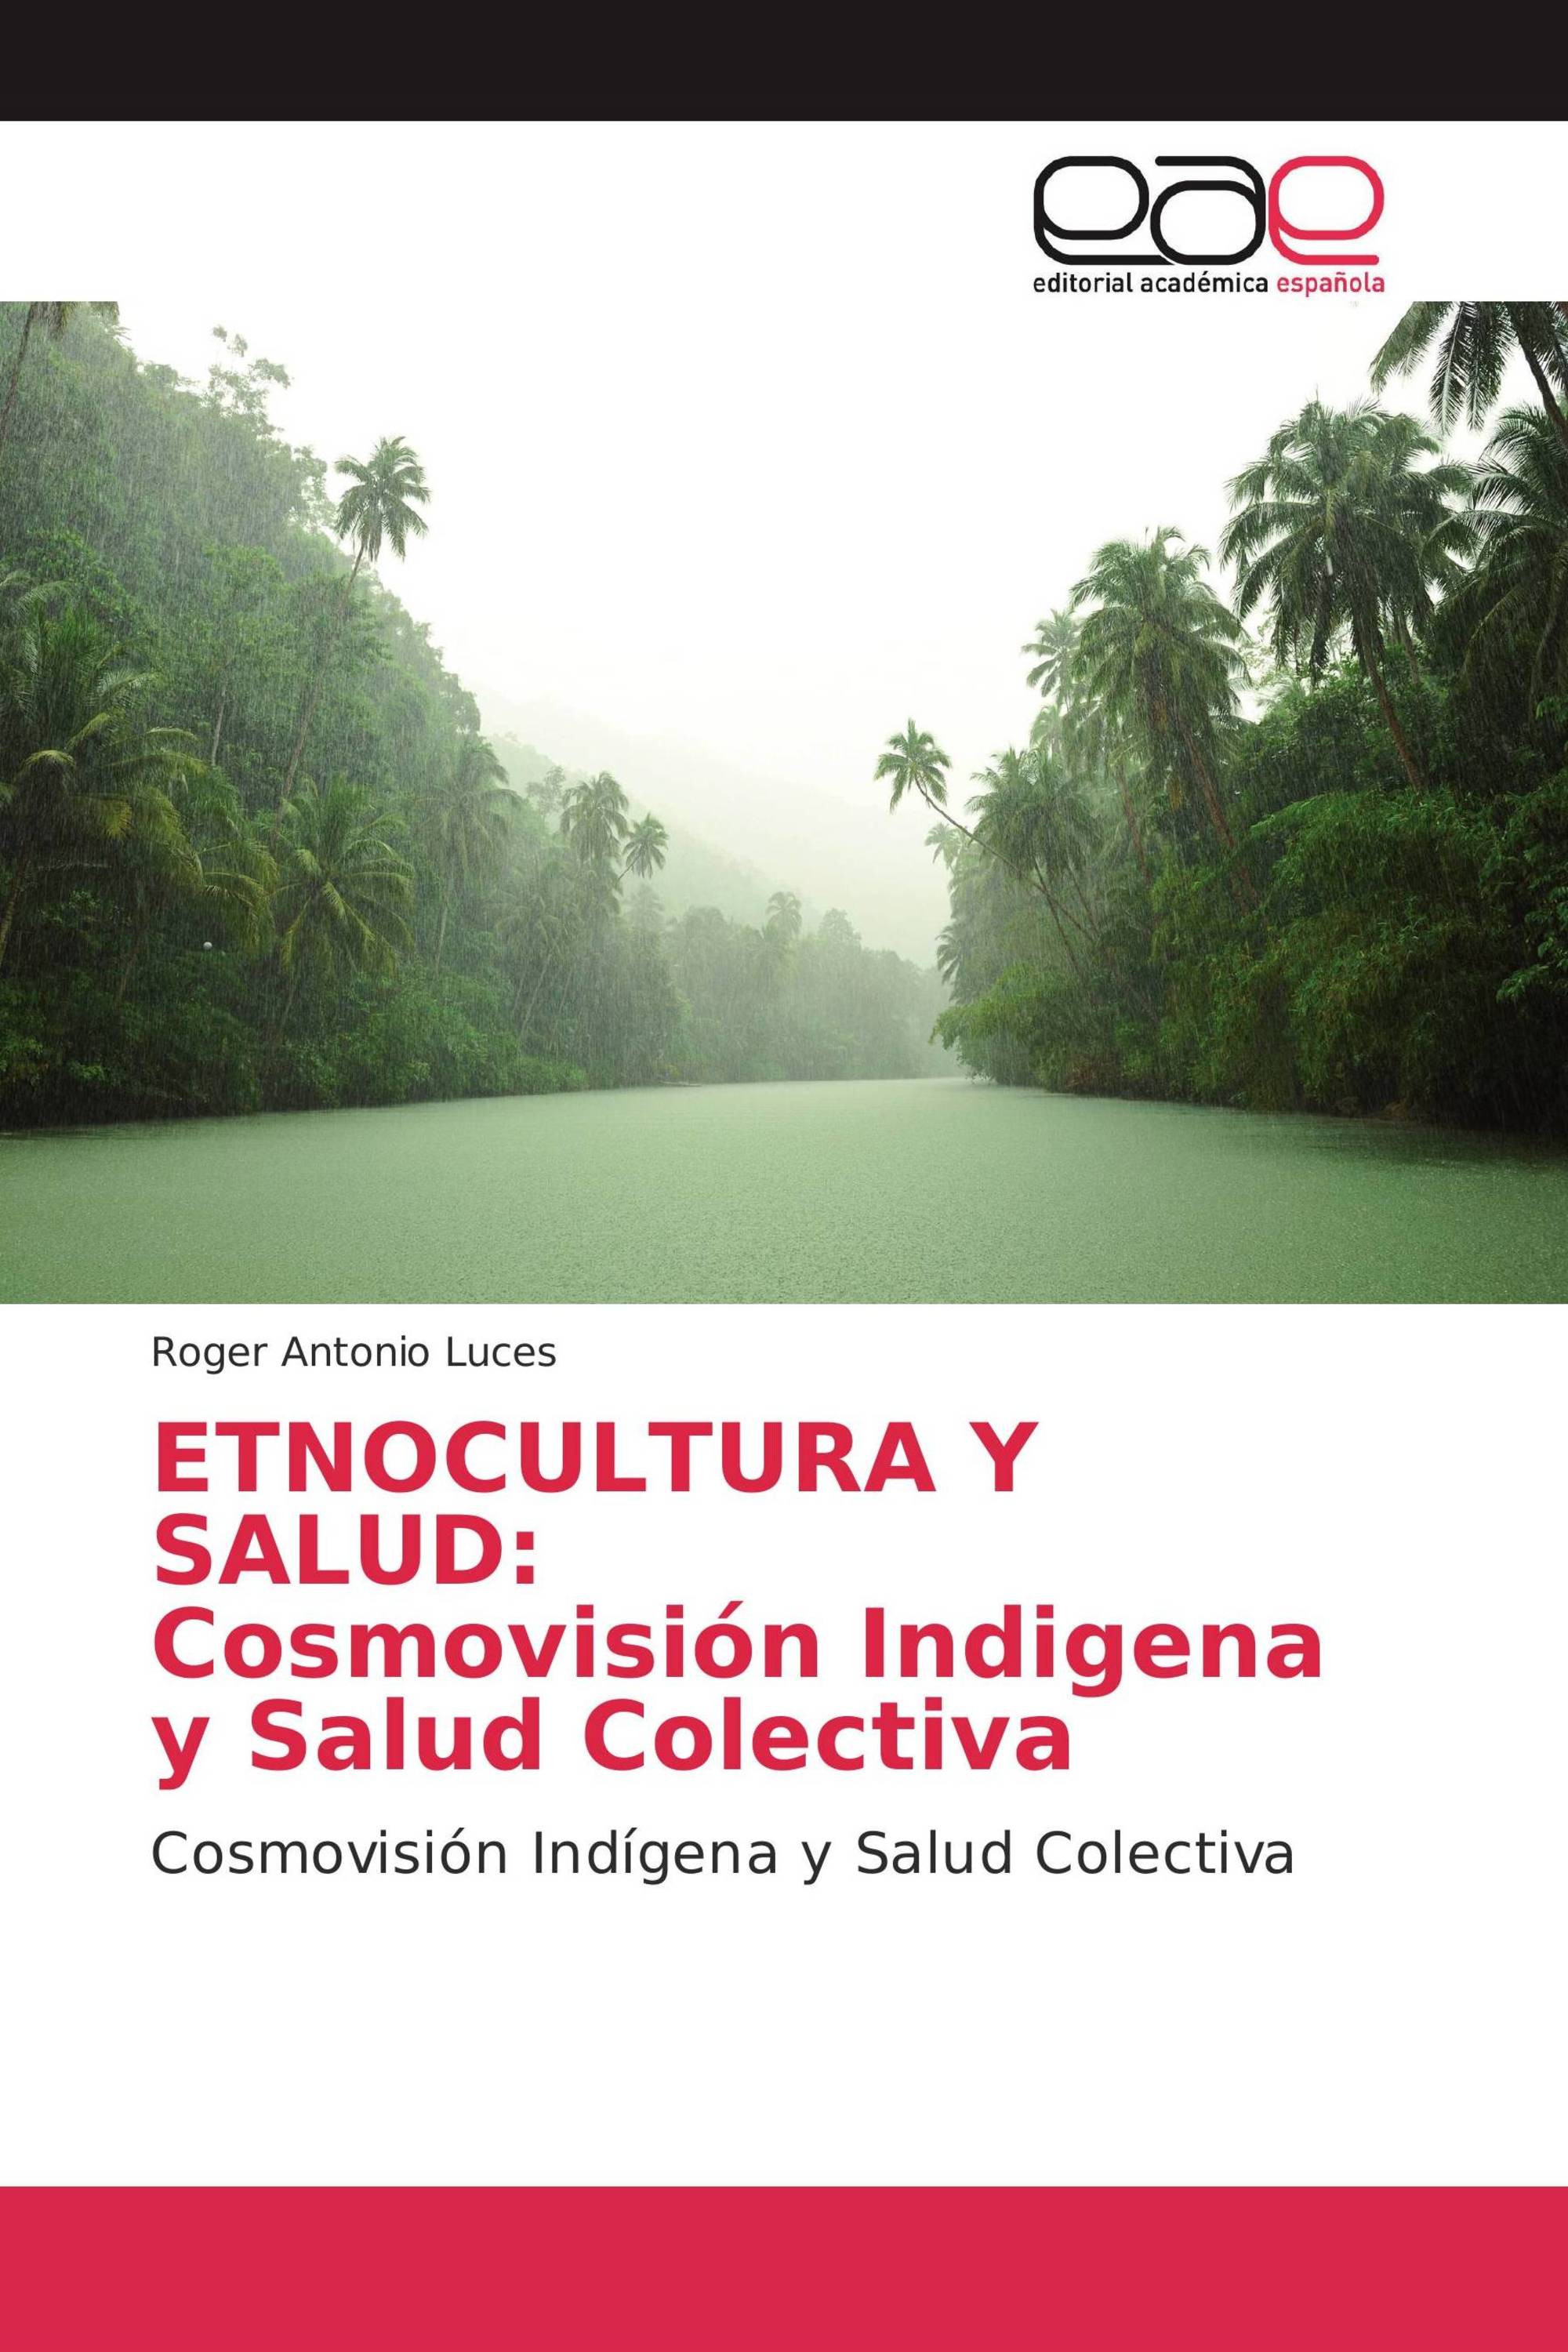 ETNOCULTURA Y SALUD: Cosmovisión Indigena y Salud Colectiva